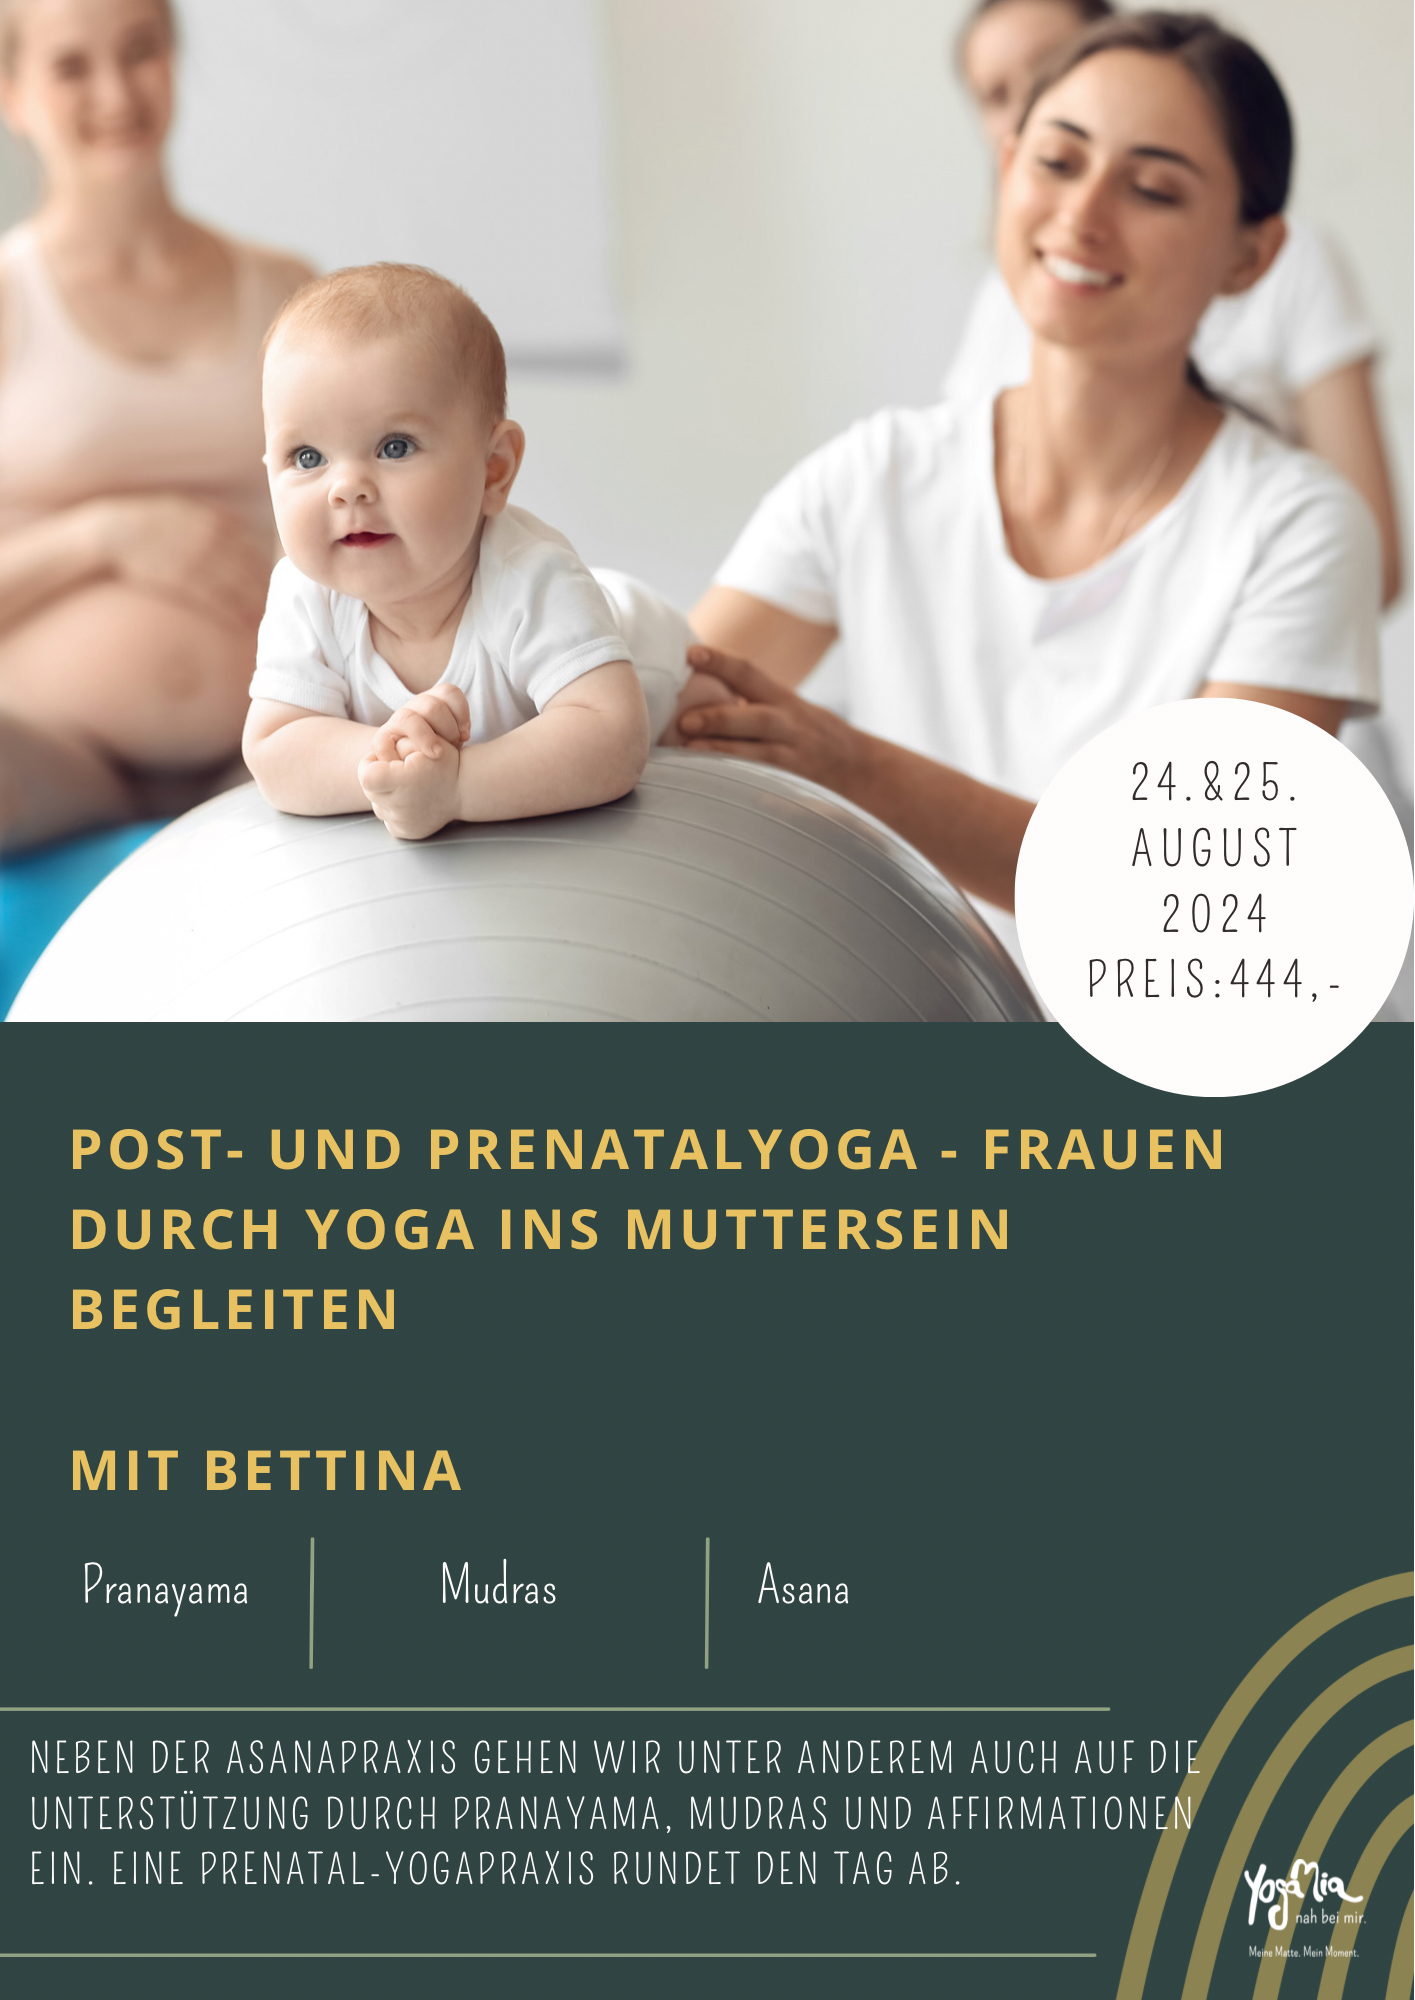 Post- und Prenatalyoga - Frauen durch Yoga ins Muttersein begleiten mit Bettina